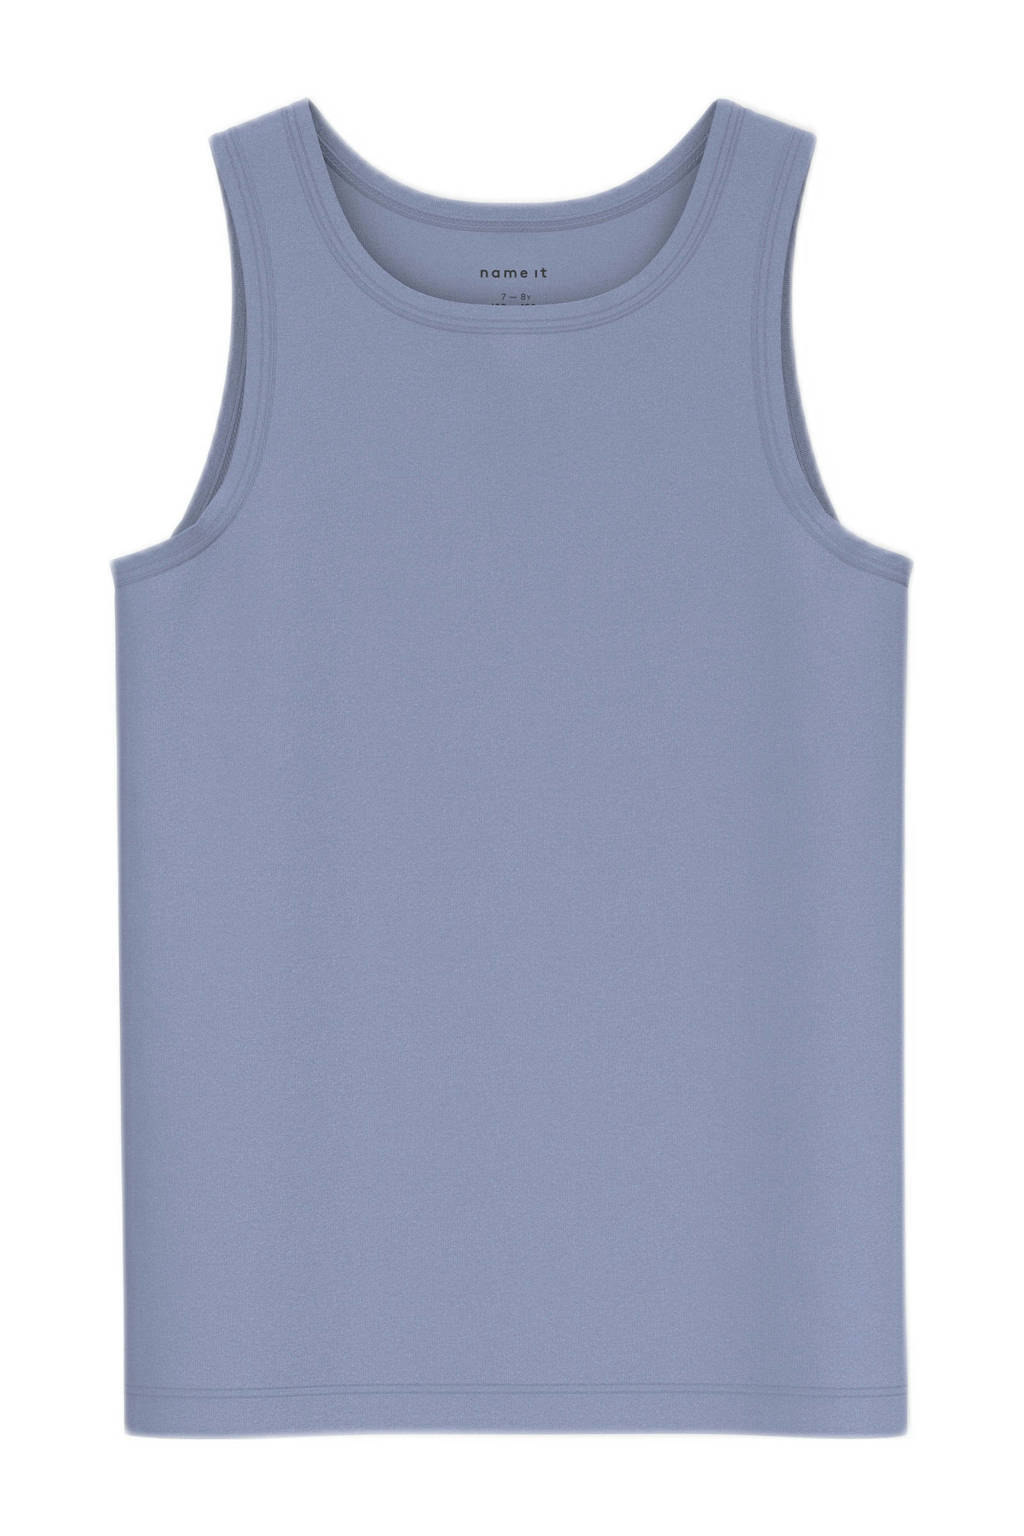 NAME IT KIDS NKMTANK hemd - set van 2 grijsblauw/blauw